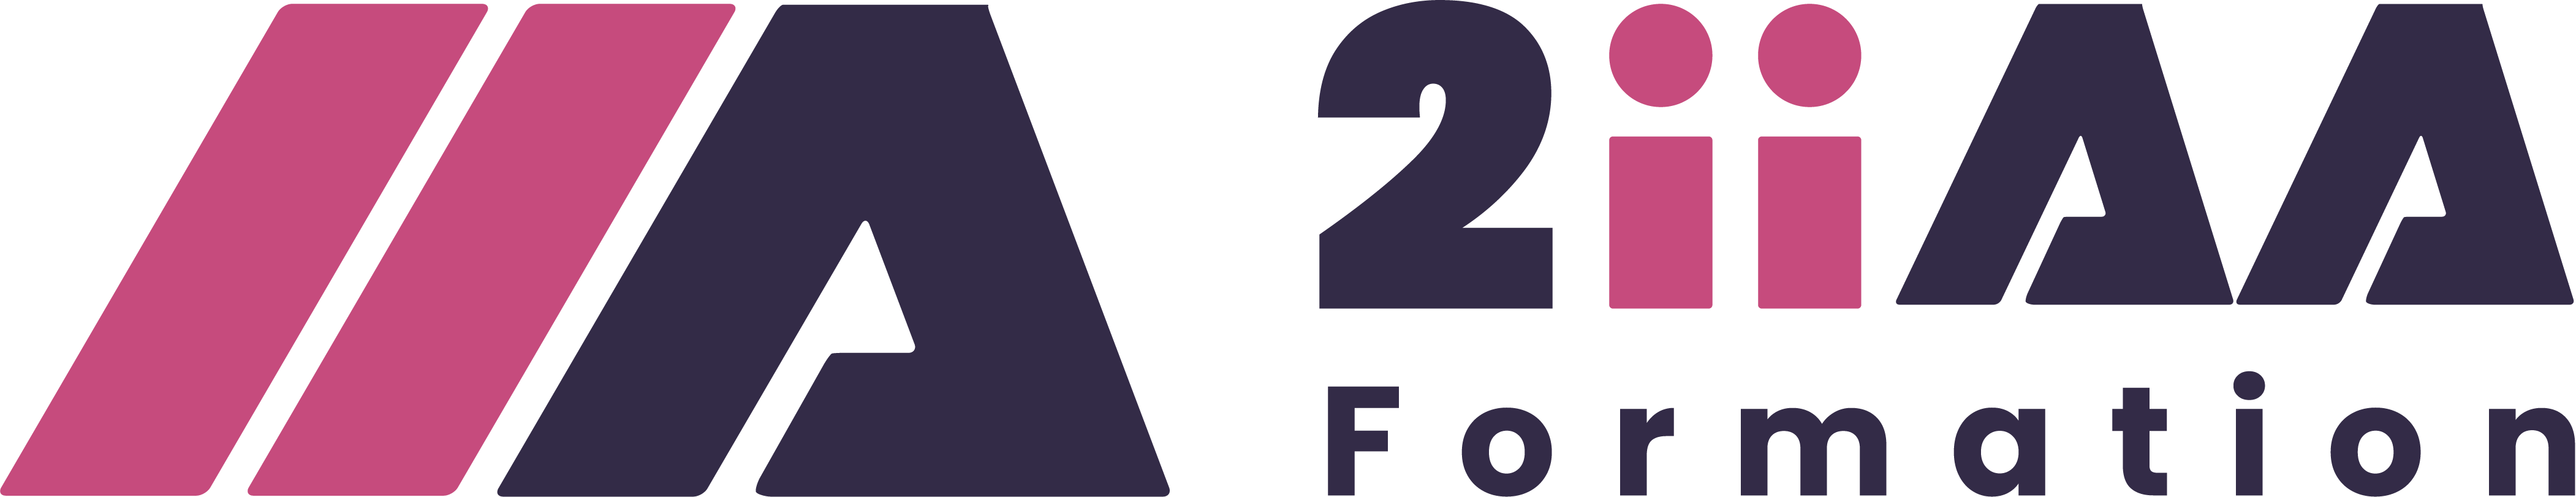 logo 2iiaa